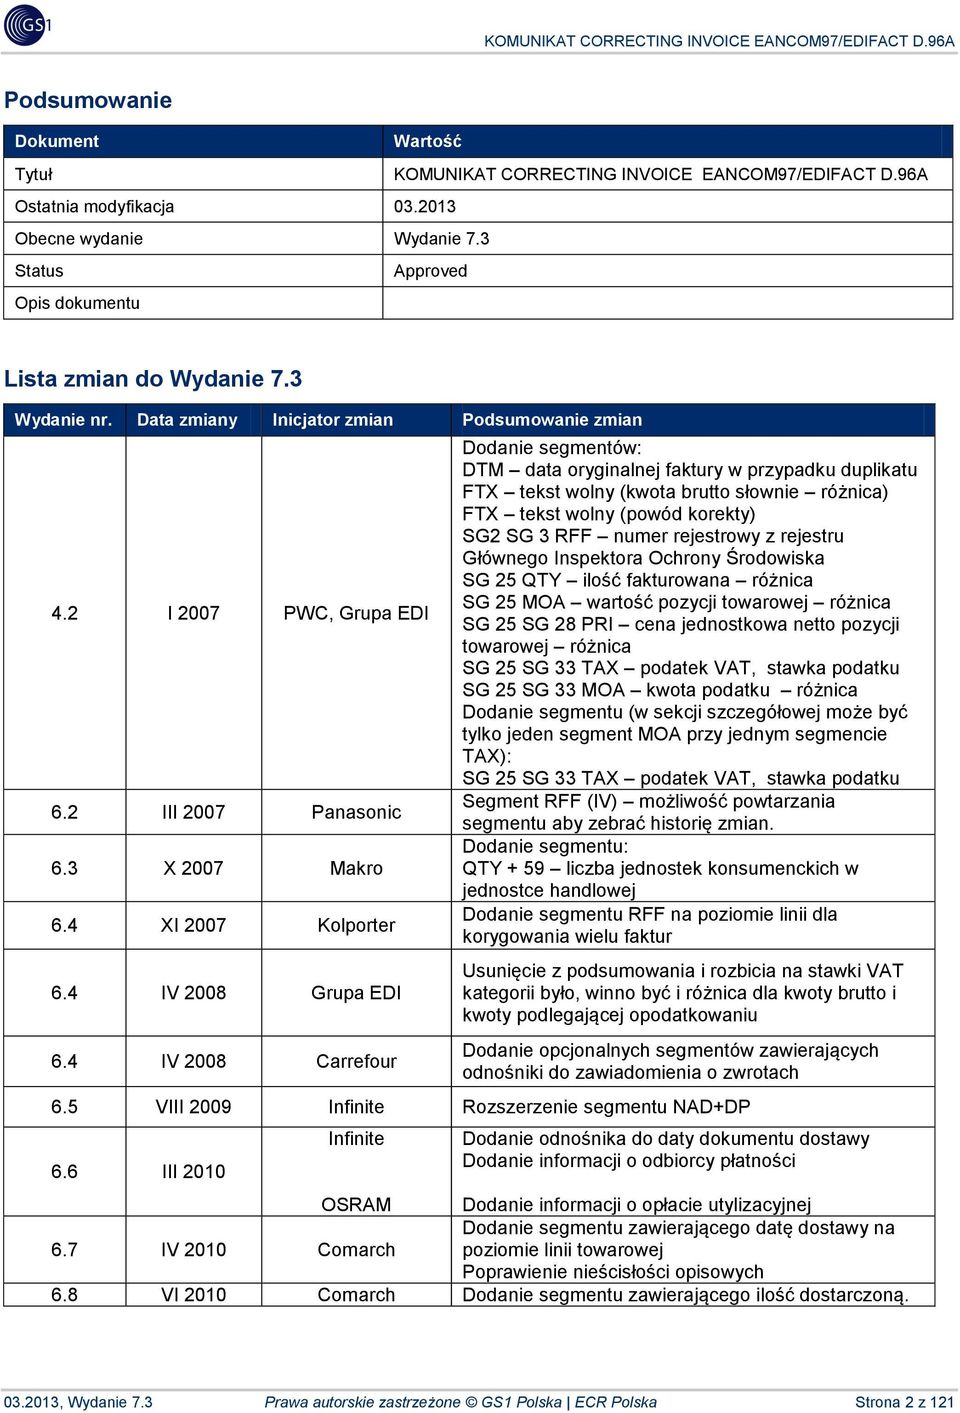 4 IV 2008 Carrefour Dodanie segmentów: DTM data oryginalnej faktury w przypadku duplikatu FTX tekst wolny (kwota brutto słownie różnica) FTX tekst wolny (powód korekty) SG2 SG 3 RFF numer rejestrowy